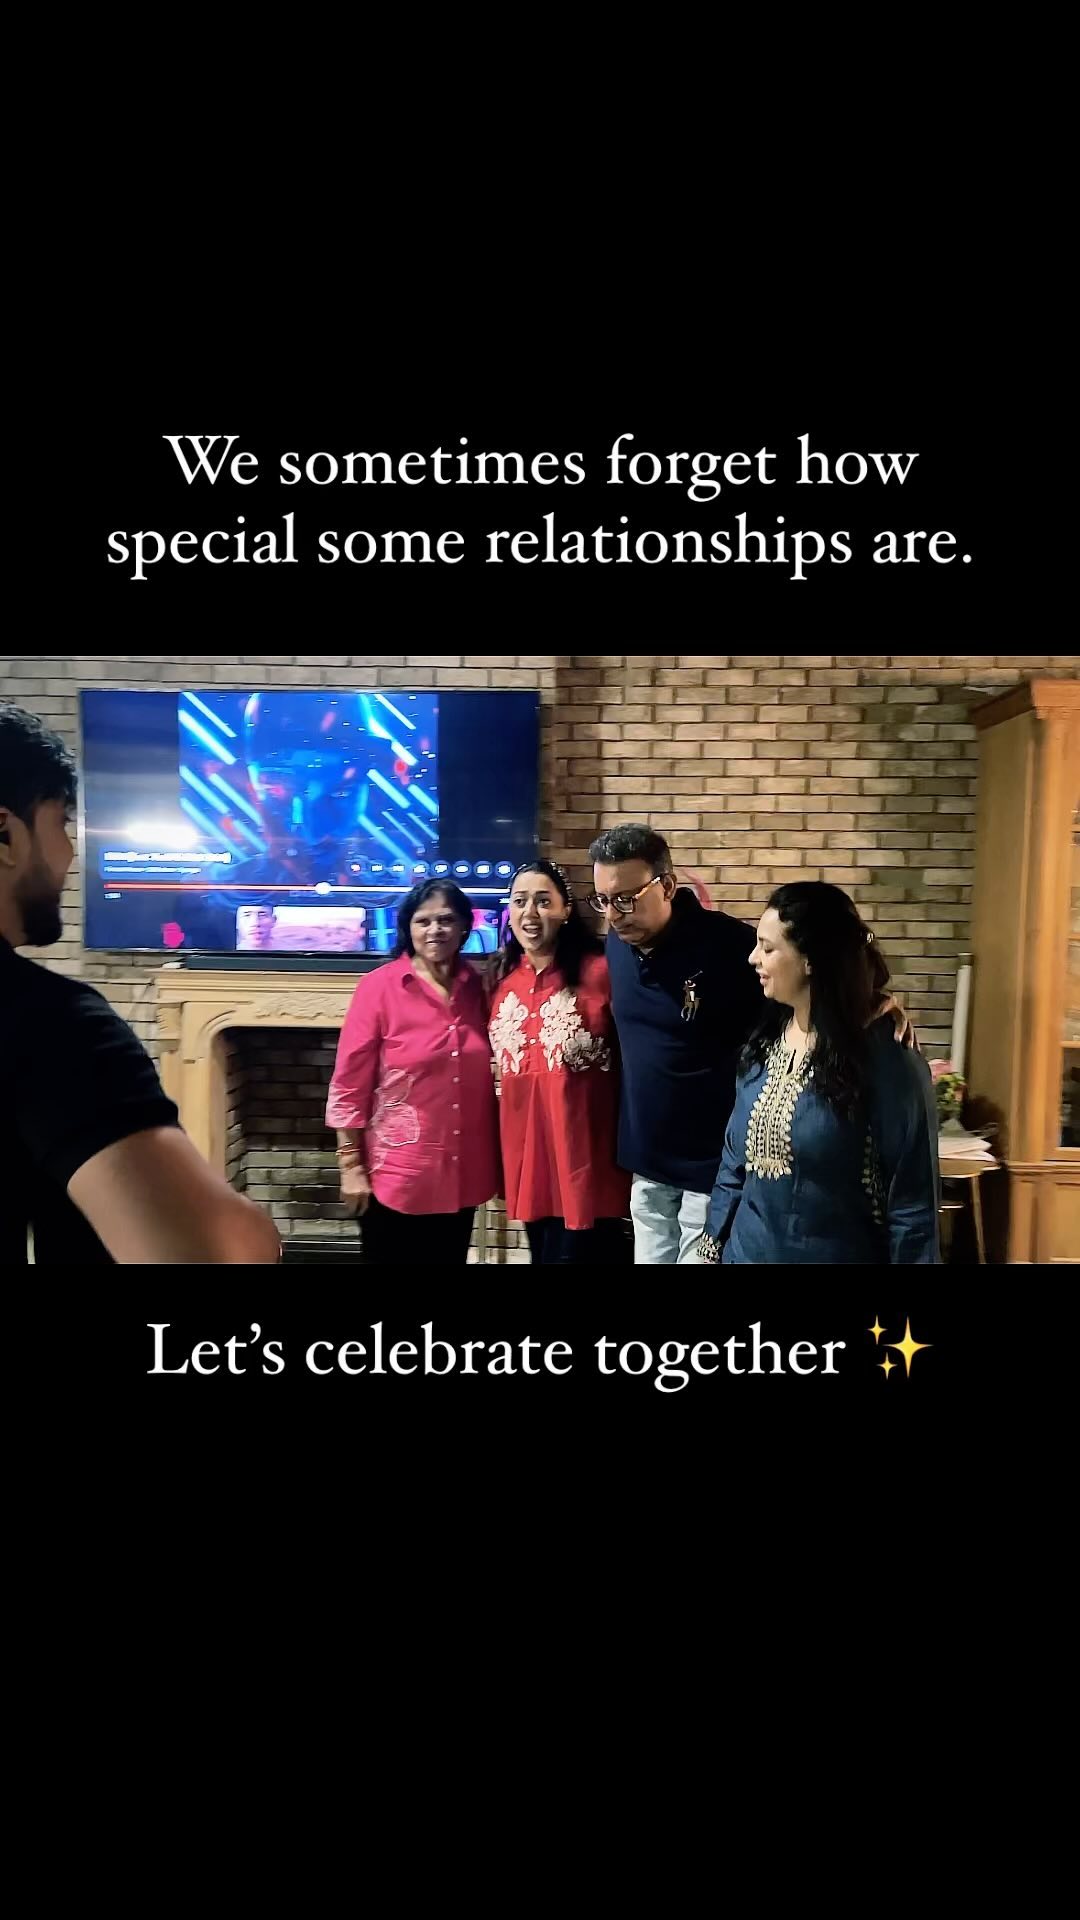 Let's Celebrate together